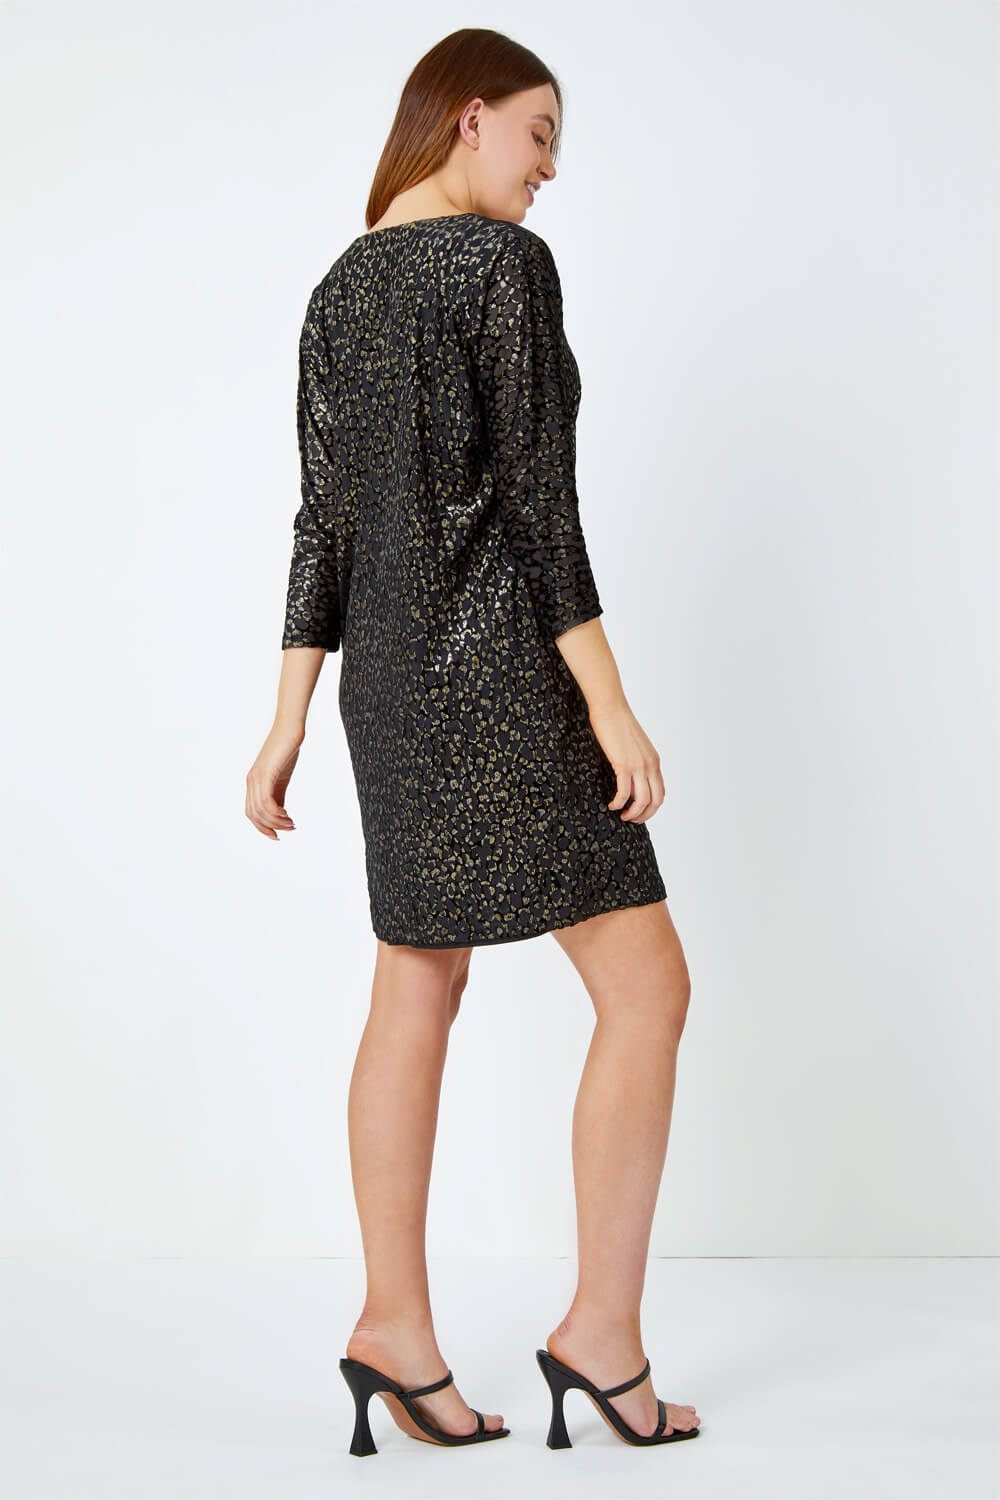 Black Shimmer Leopard Print Velvet Dress, Image 3 of 5